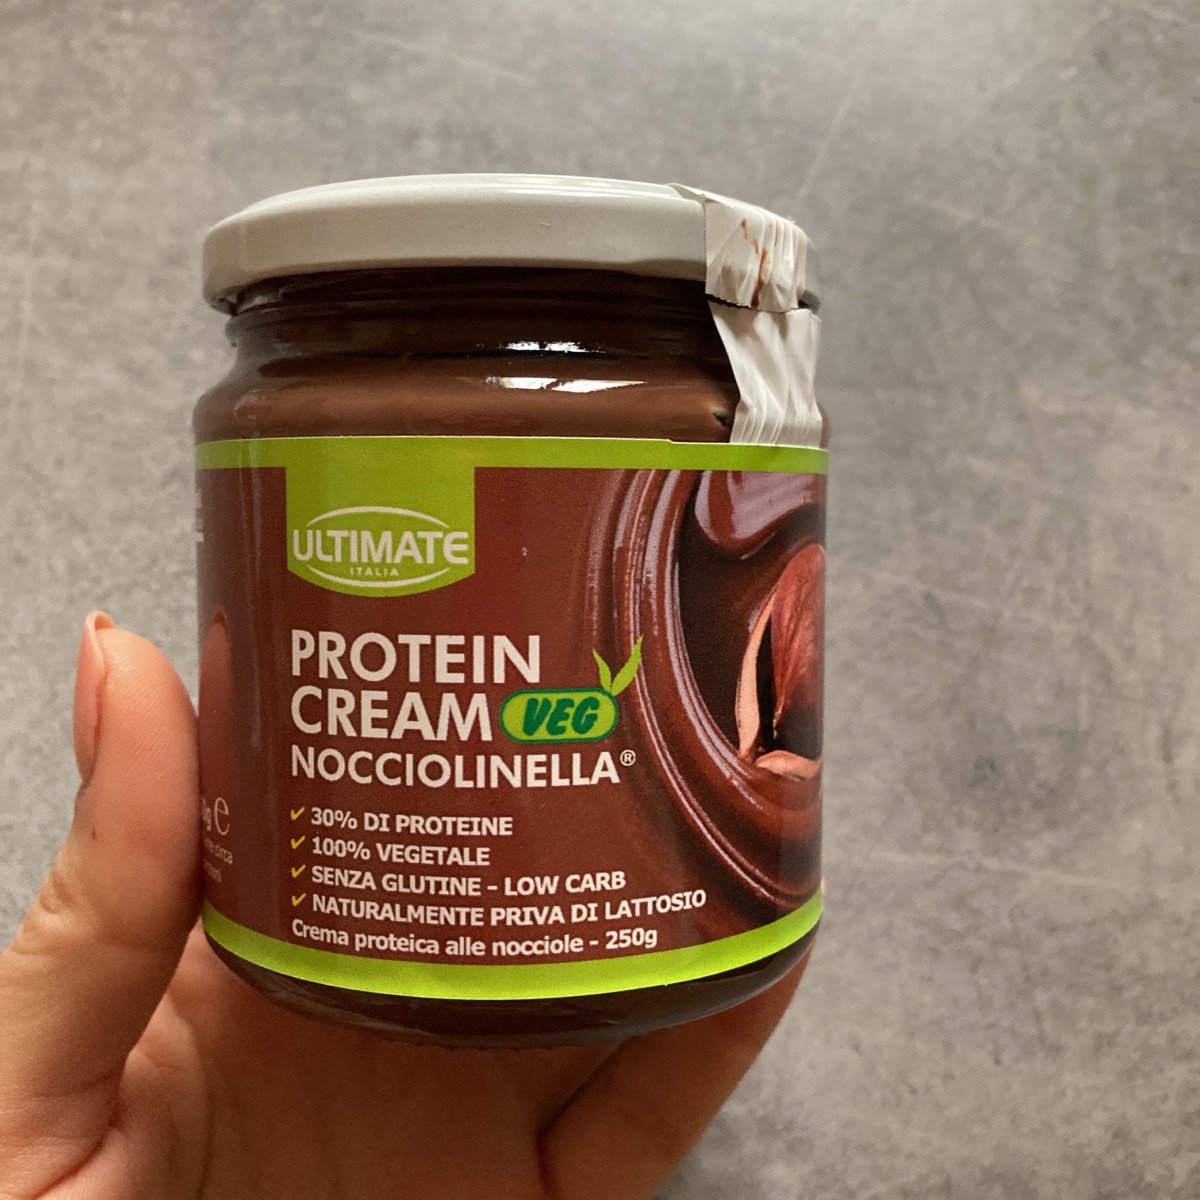 Ultimate Italia Protein cream nocciolinella Reviews | abillion